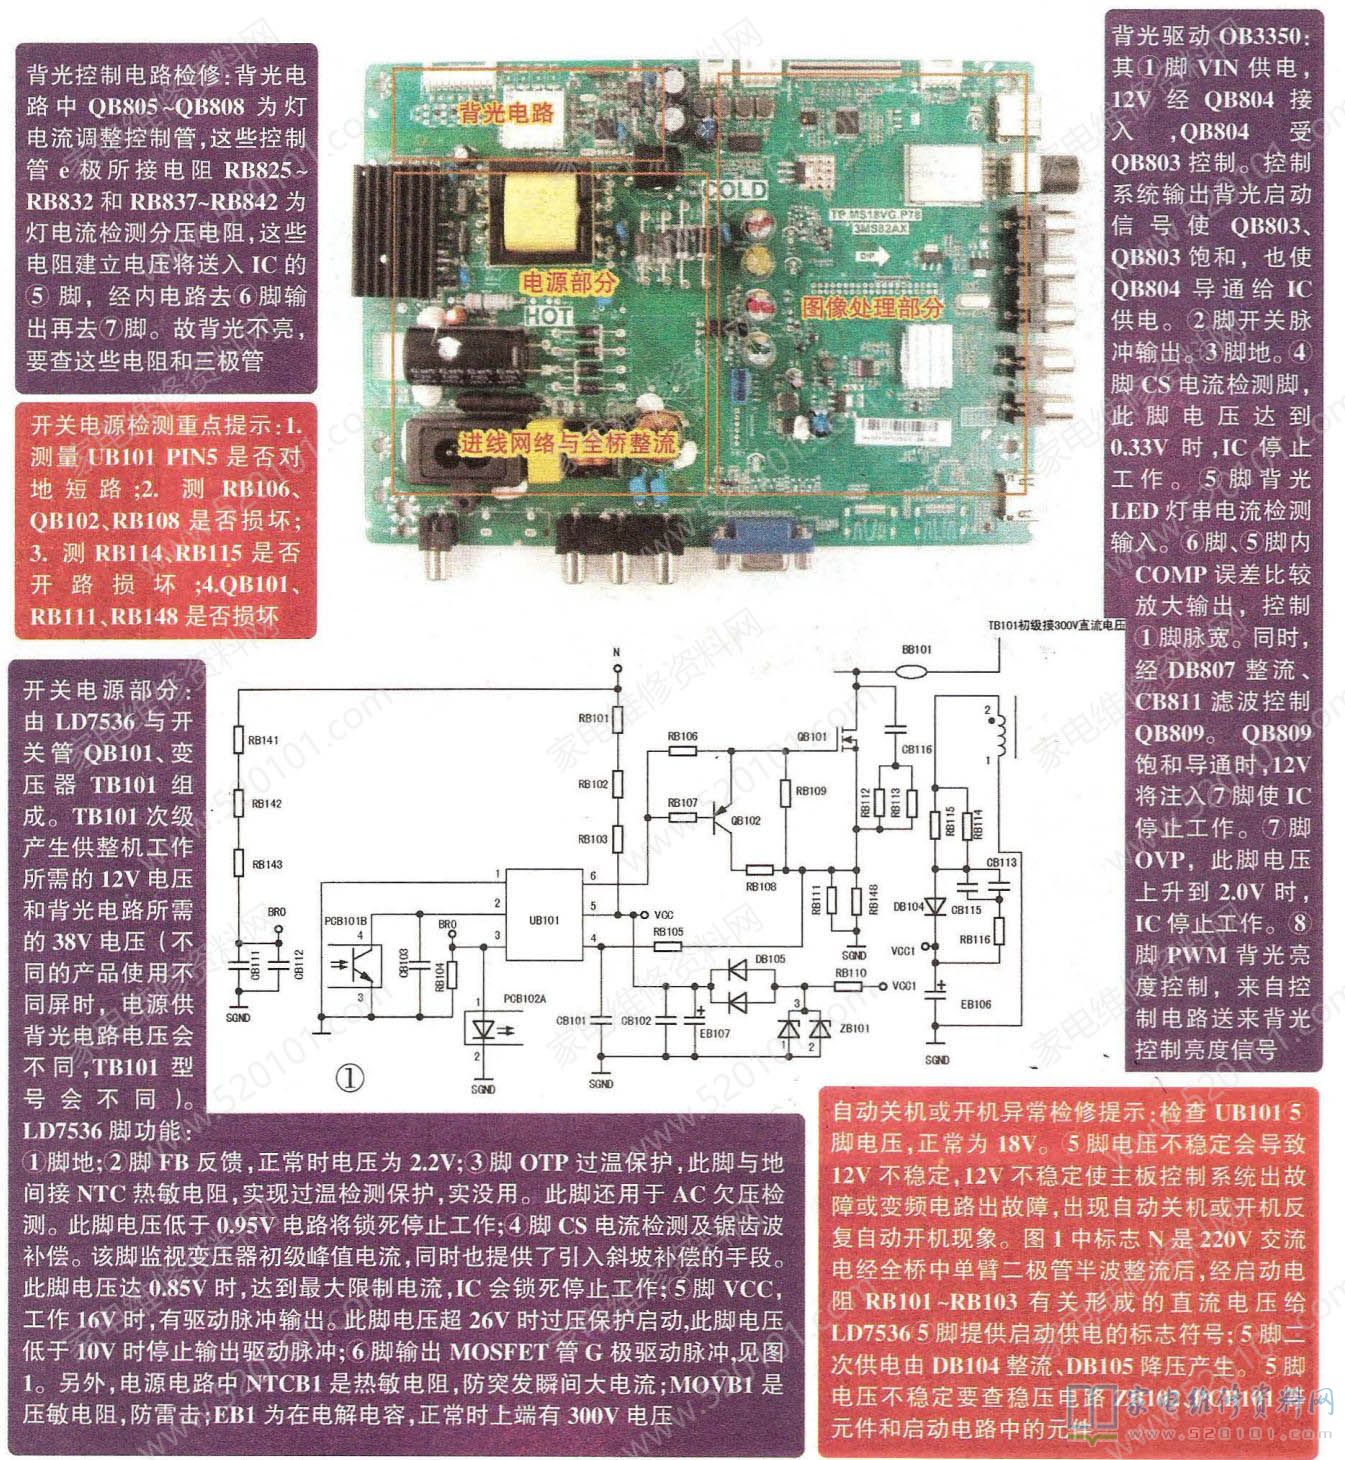 TCL 3MS82AX机芯液晶电视主板故障维修图解 第1张